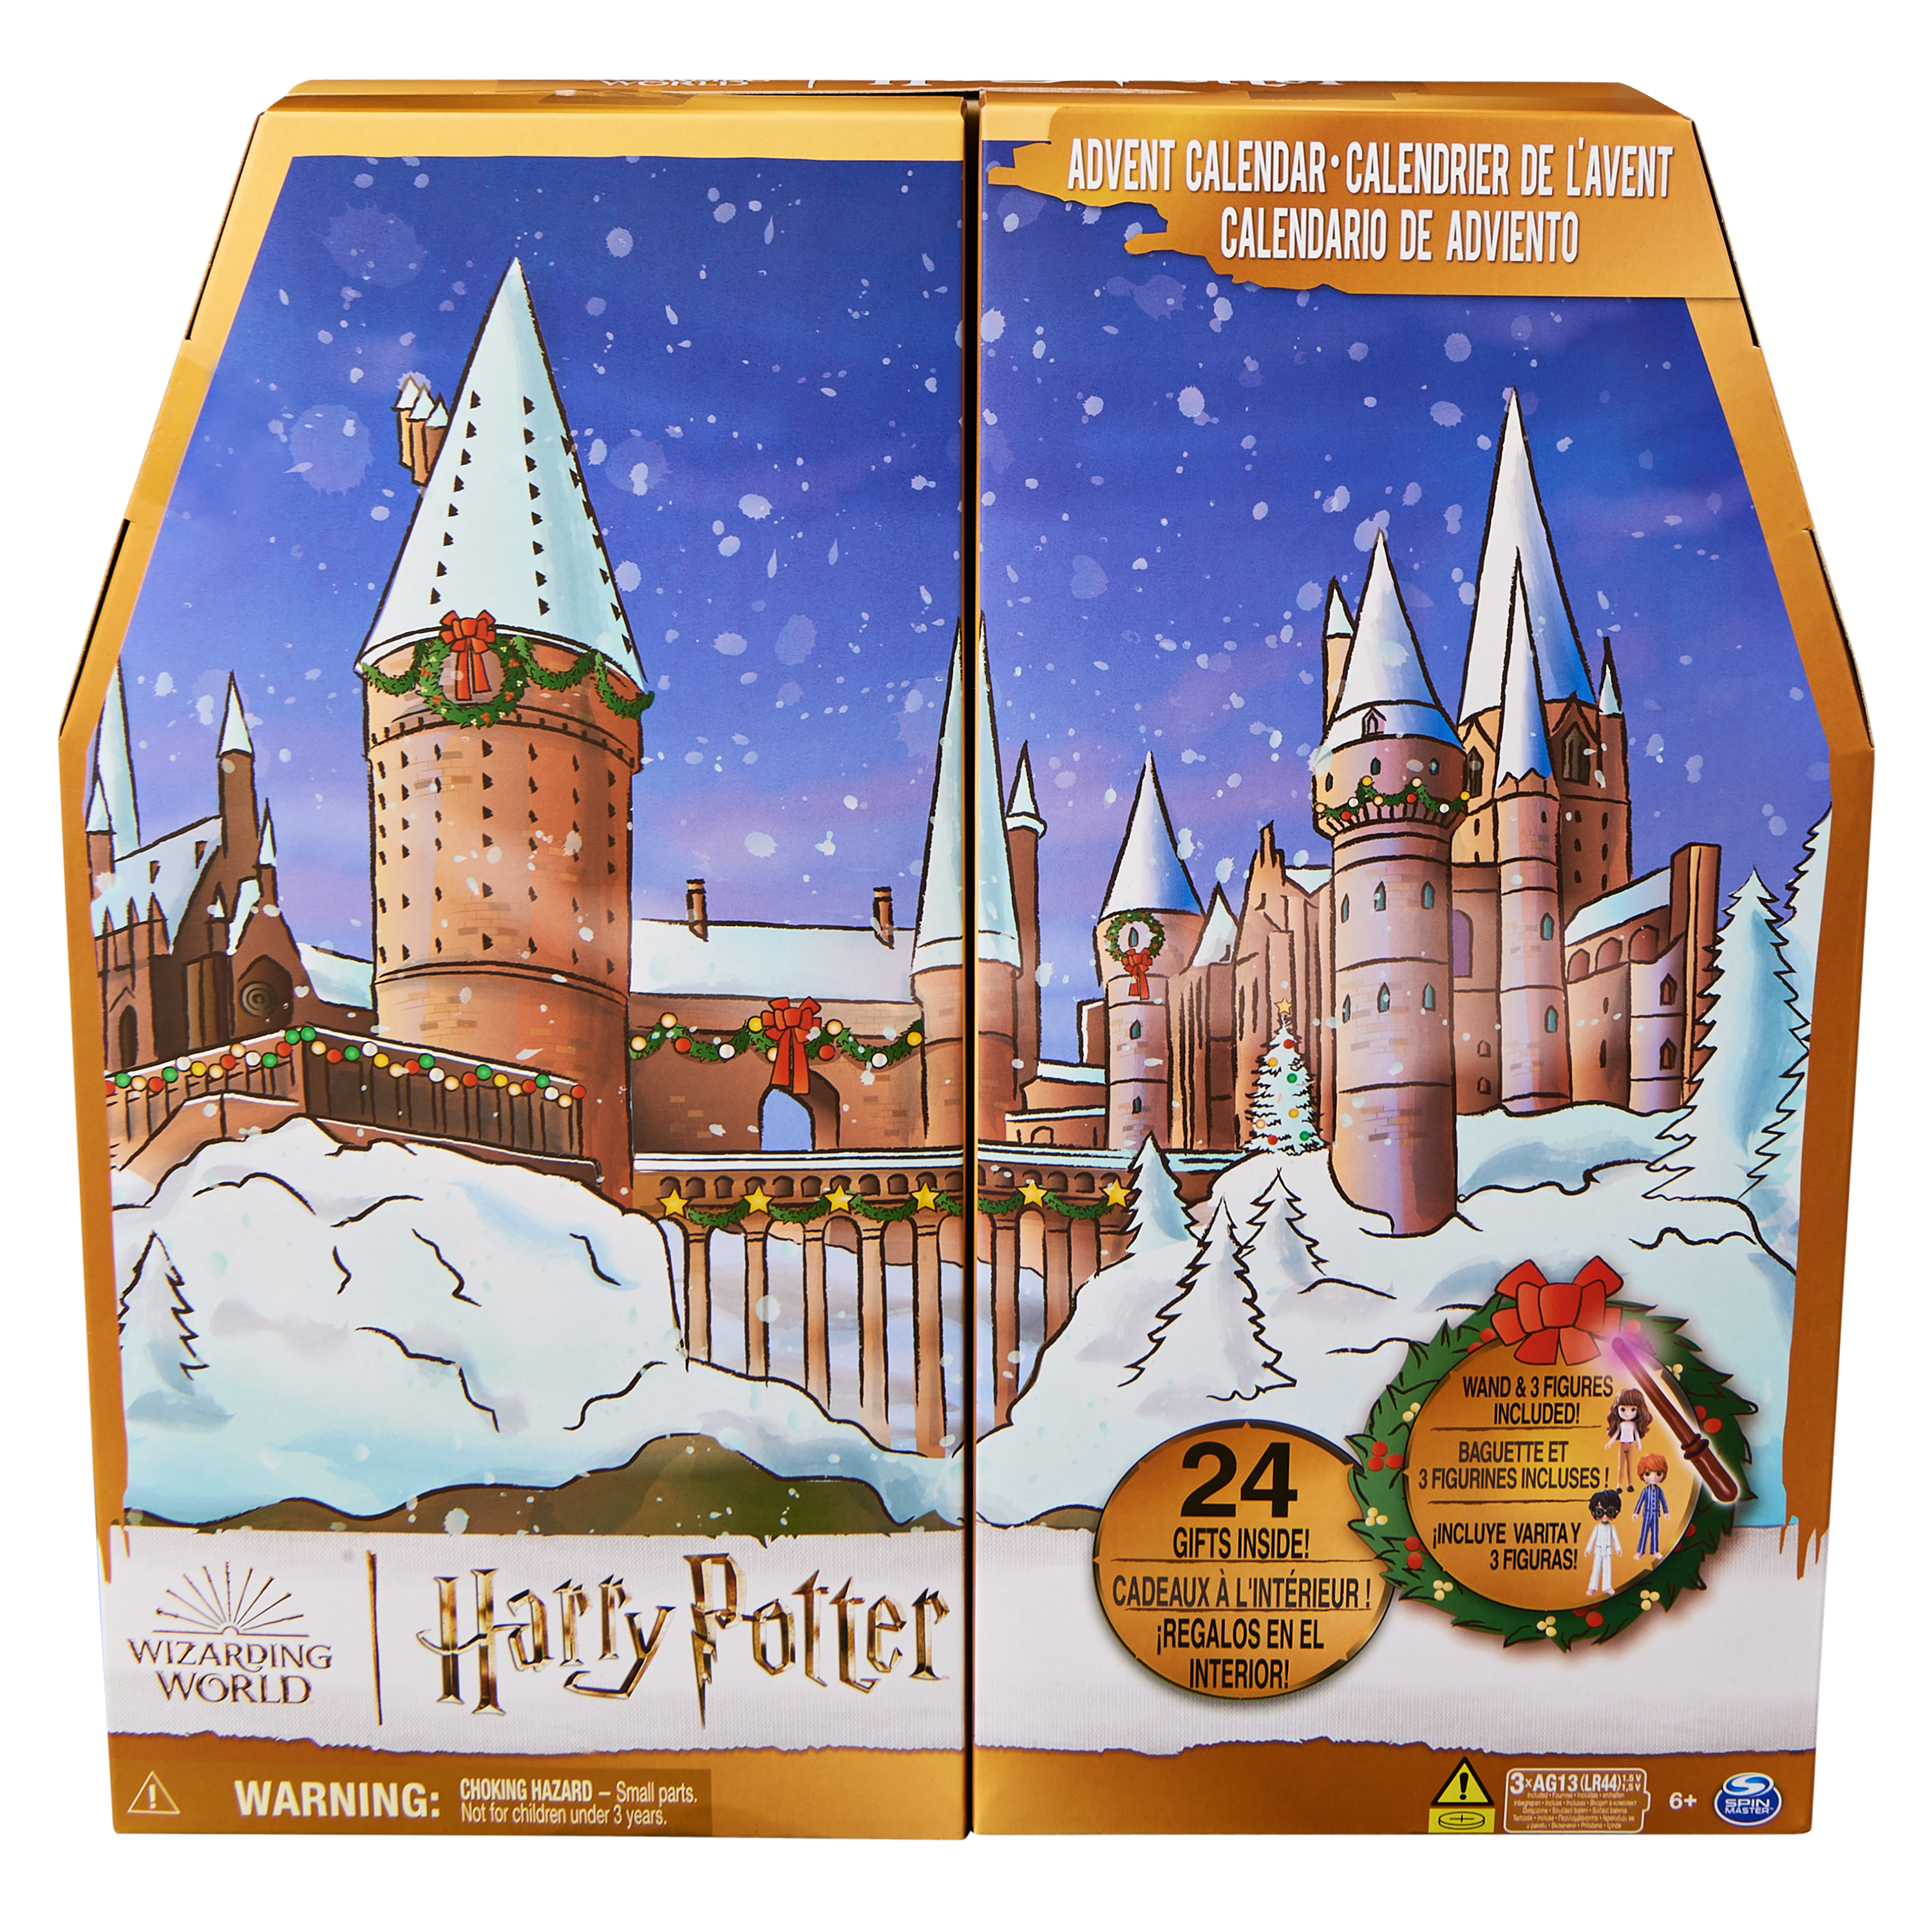 Die Vorweihnachtszeit wird magisch mit dem neuen Wizarding World Adventskalender